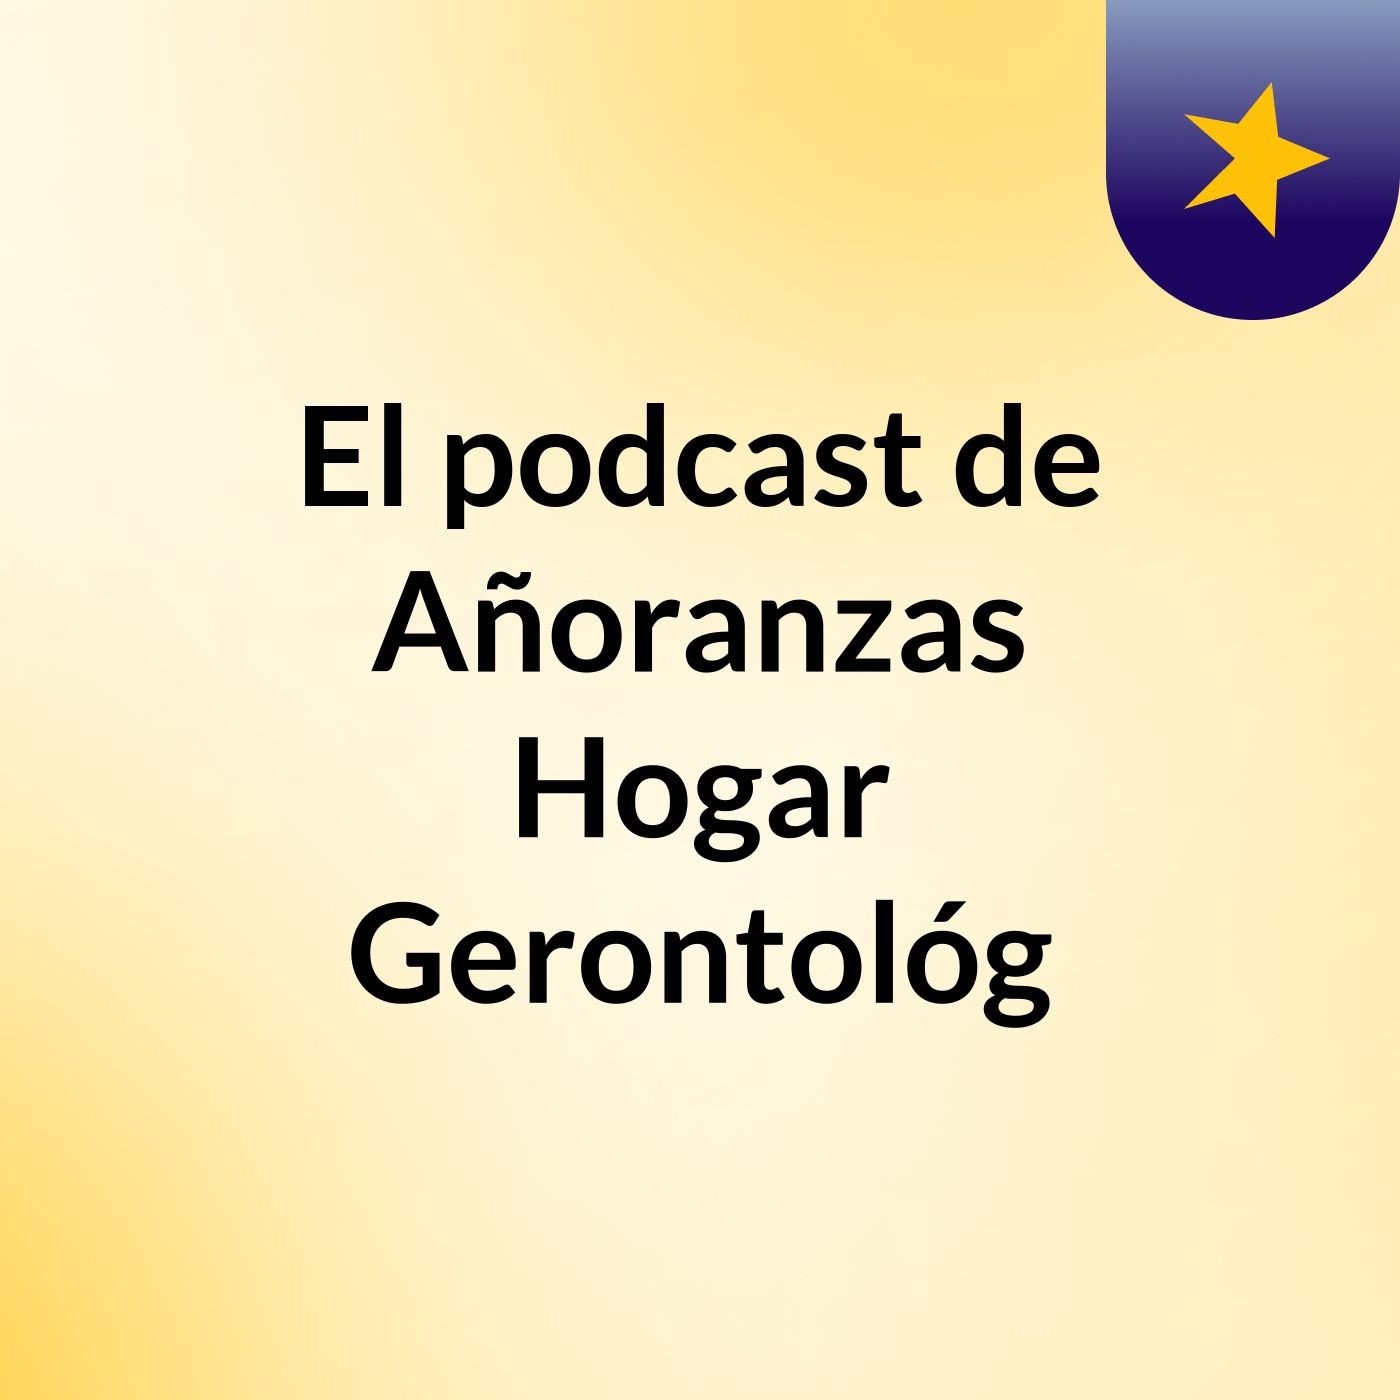 El podcast de Añoranzas Hogar Gerontológ